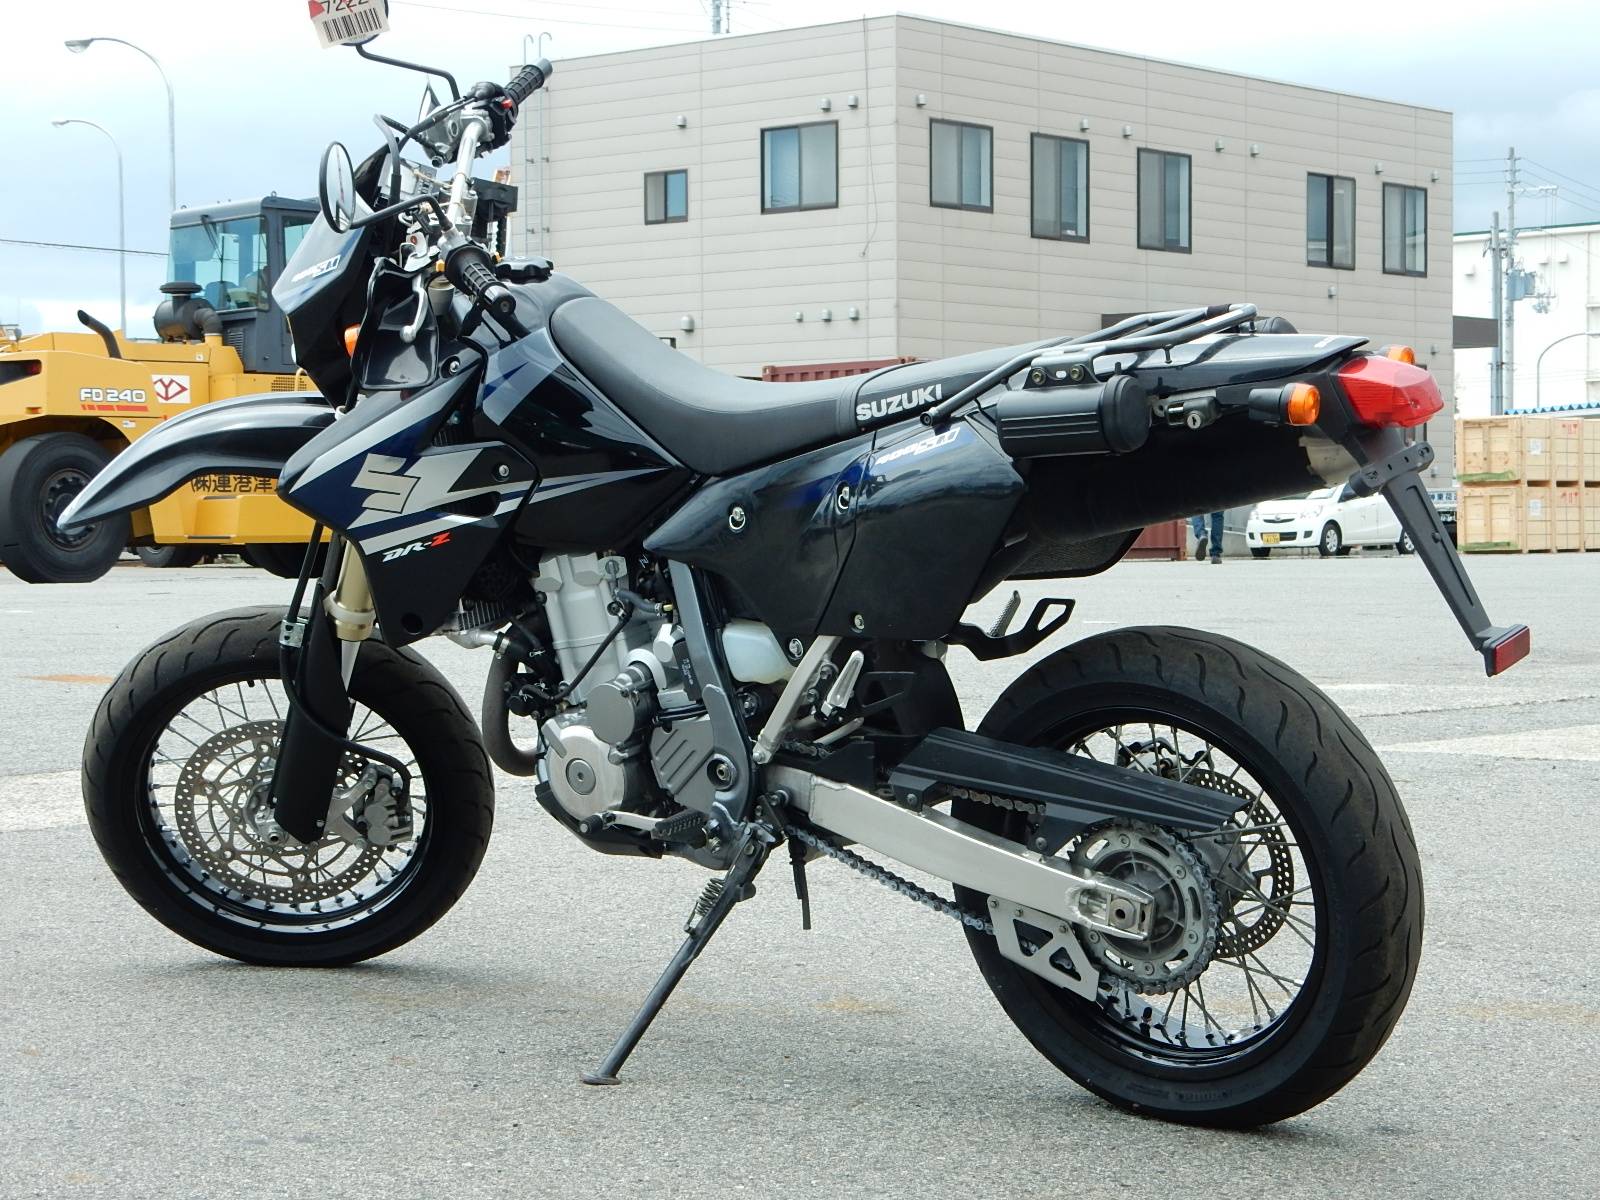 Мотоцикл ямаха xt 250 serow - один из немногих элегантных легких эндуро